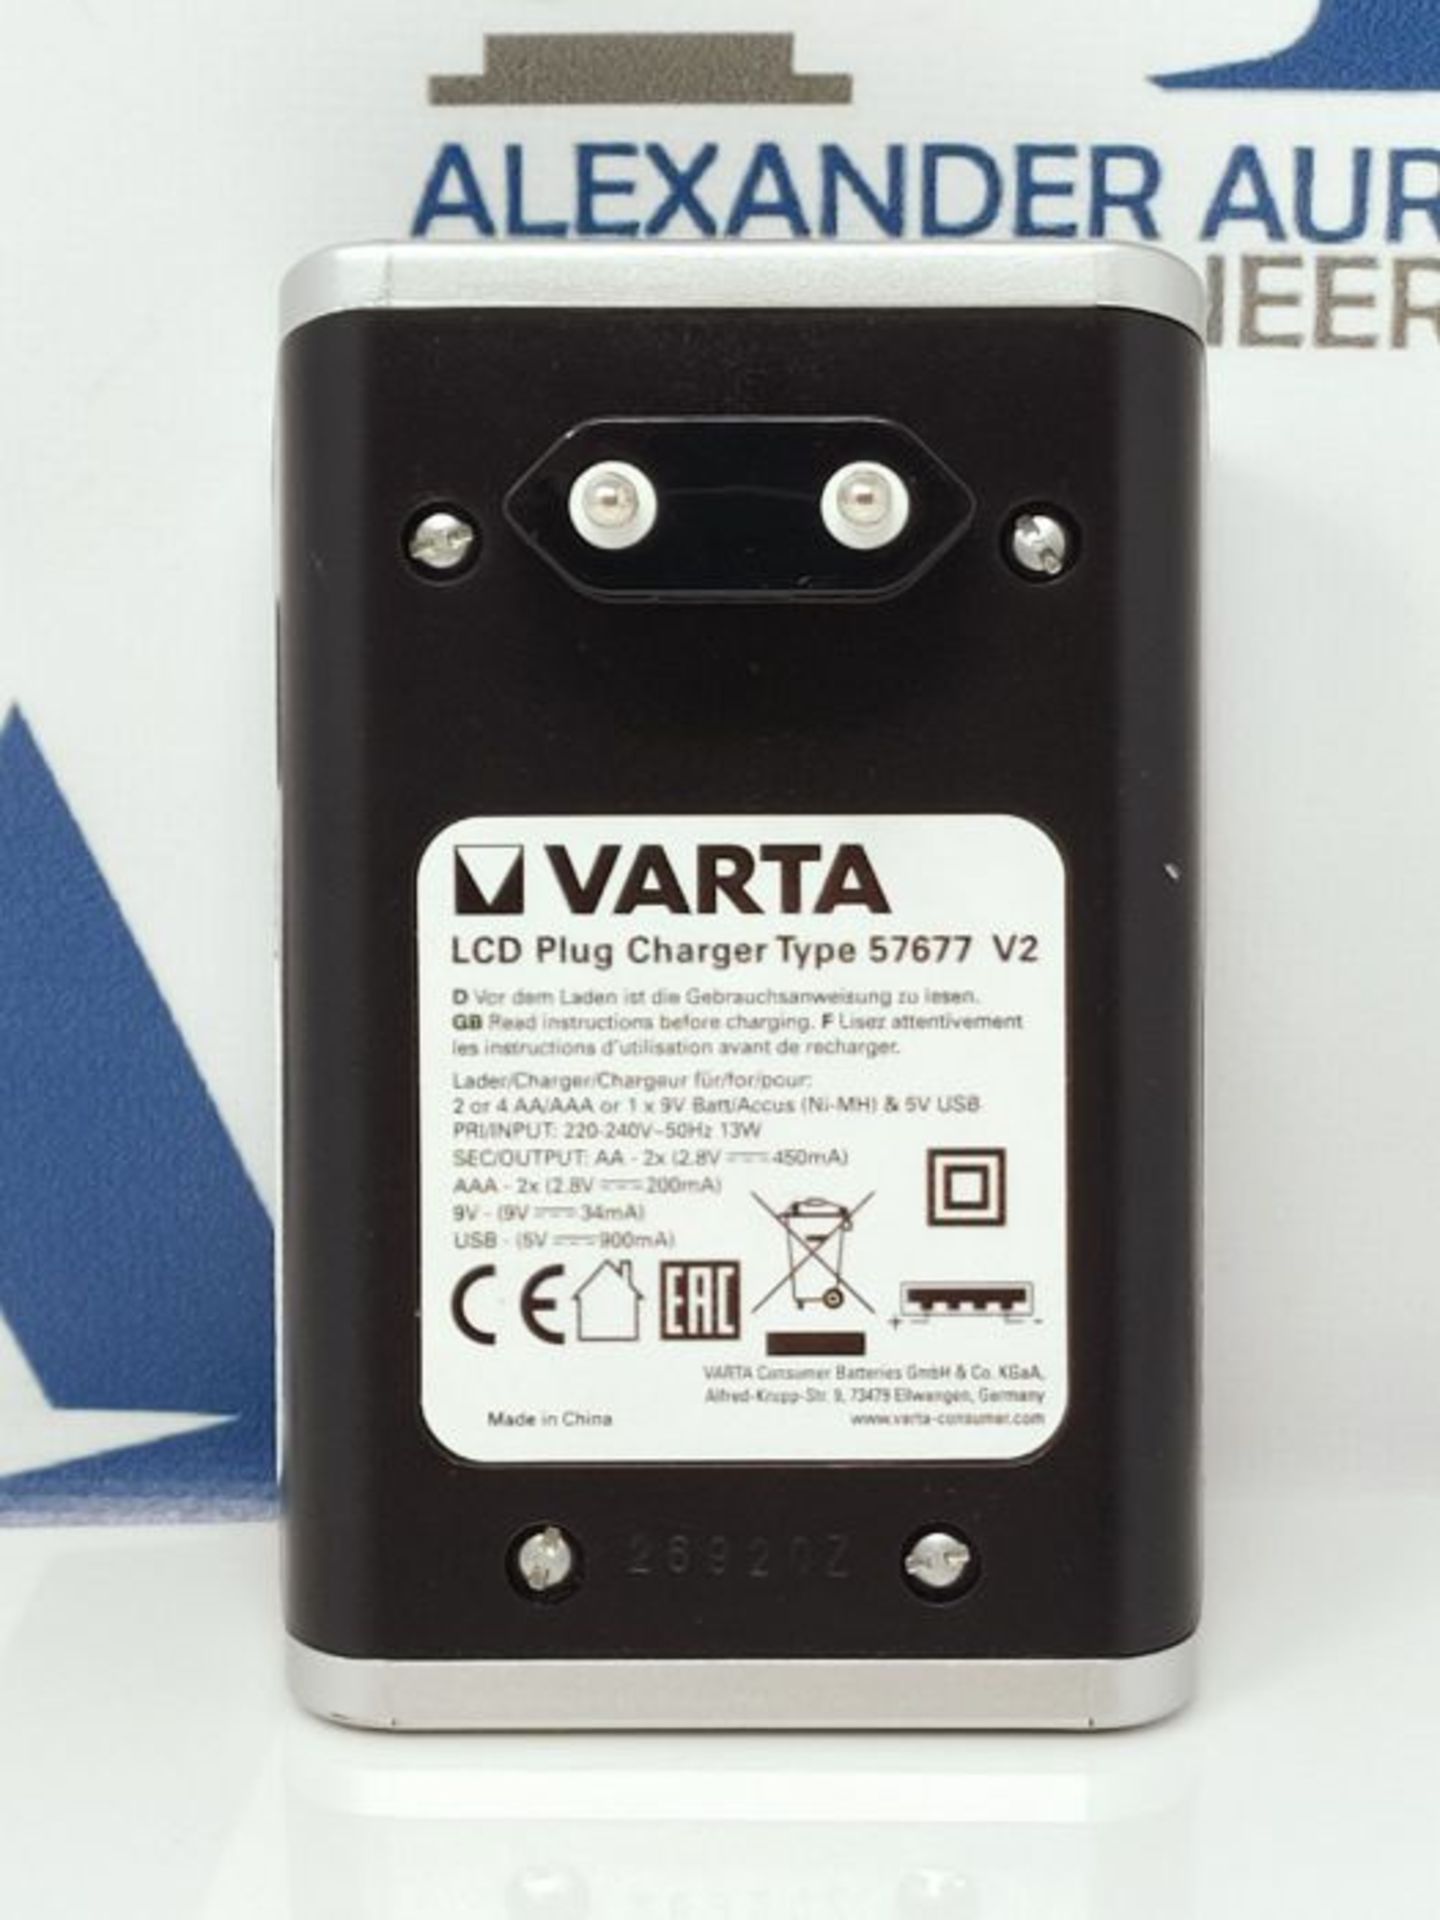 VARTA LCD Plug LadegerÃ¤t fÃ¼r AA/AAA/9V und USB-GerÃ¤te (inkl. 4x AA 2100 mAh) - Image 2 of 2